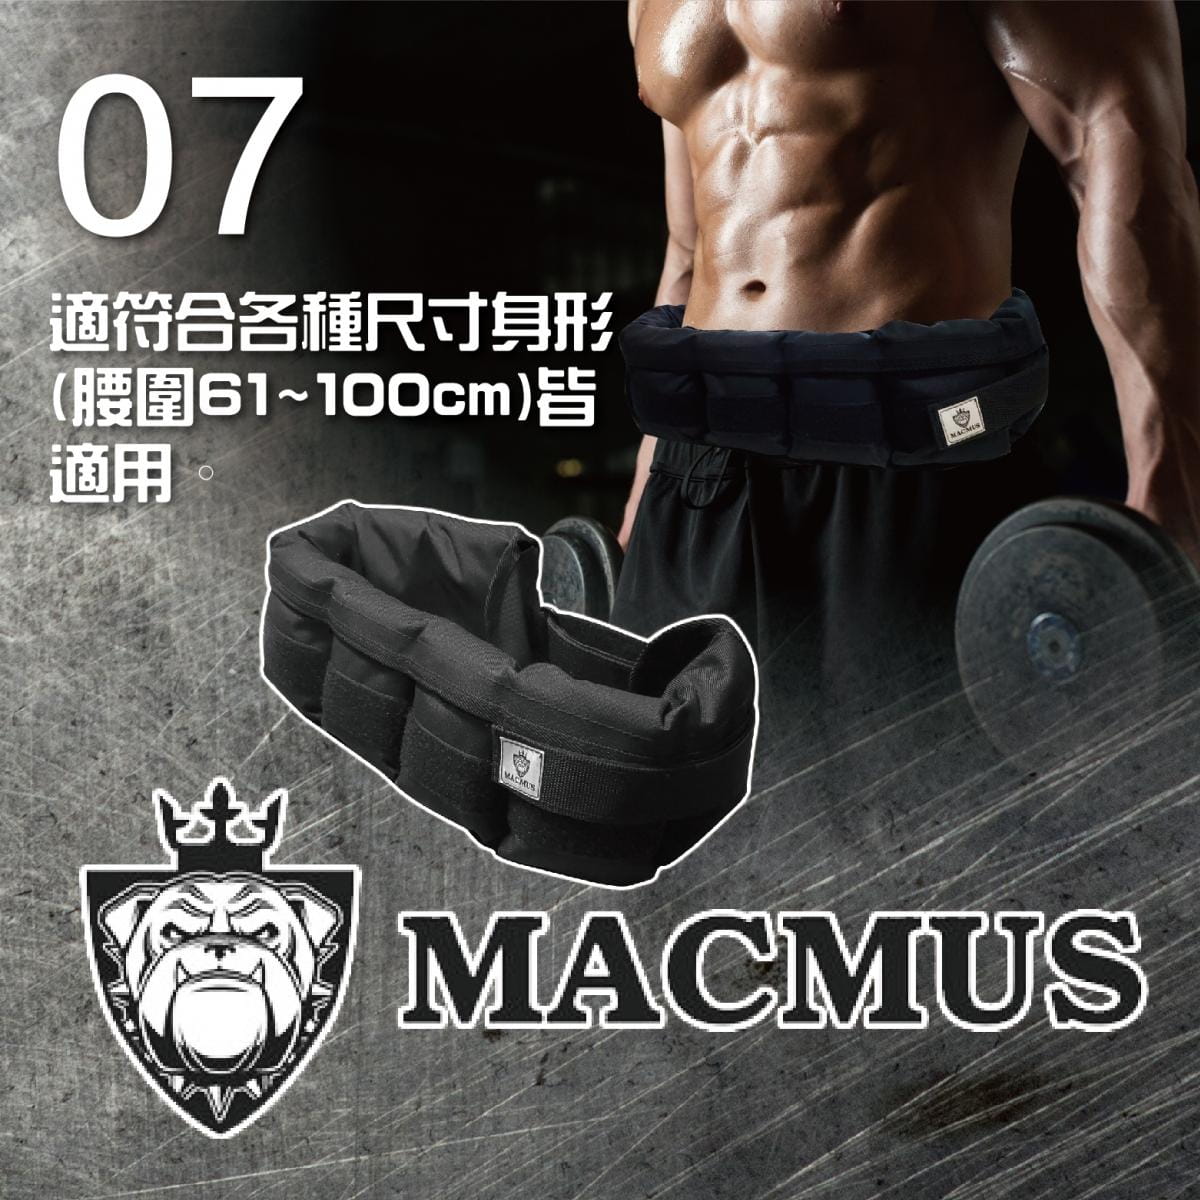 【MACMUS】4公斤負重腰帶｜8格式可調整重訓腰帶｜強化核心肌群鍛鍊腰部肌肉 5